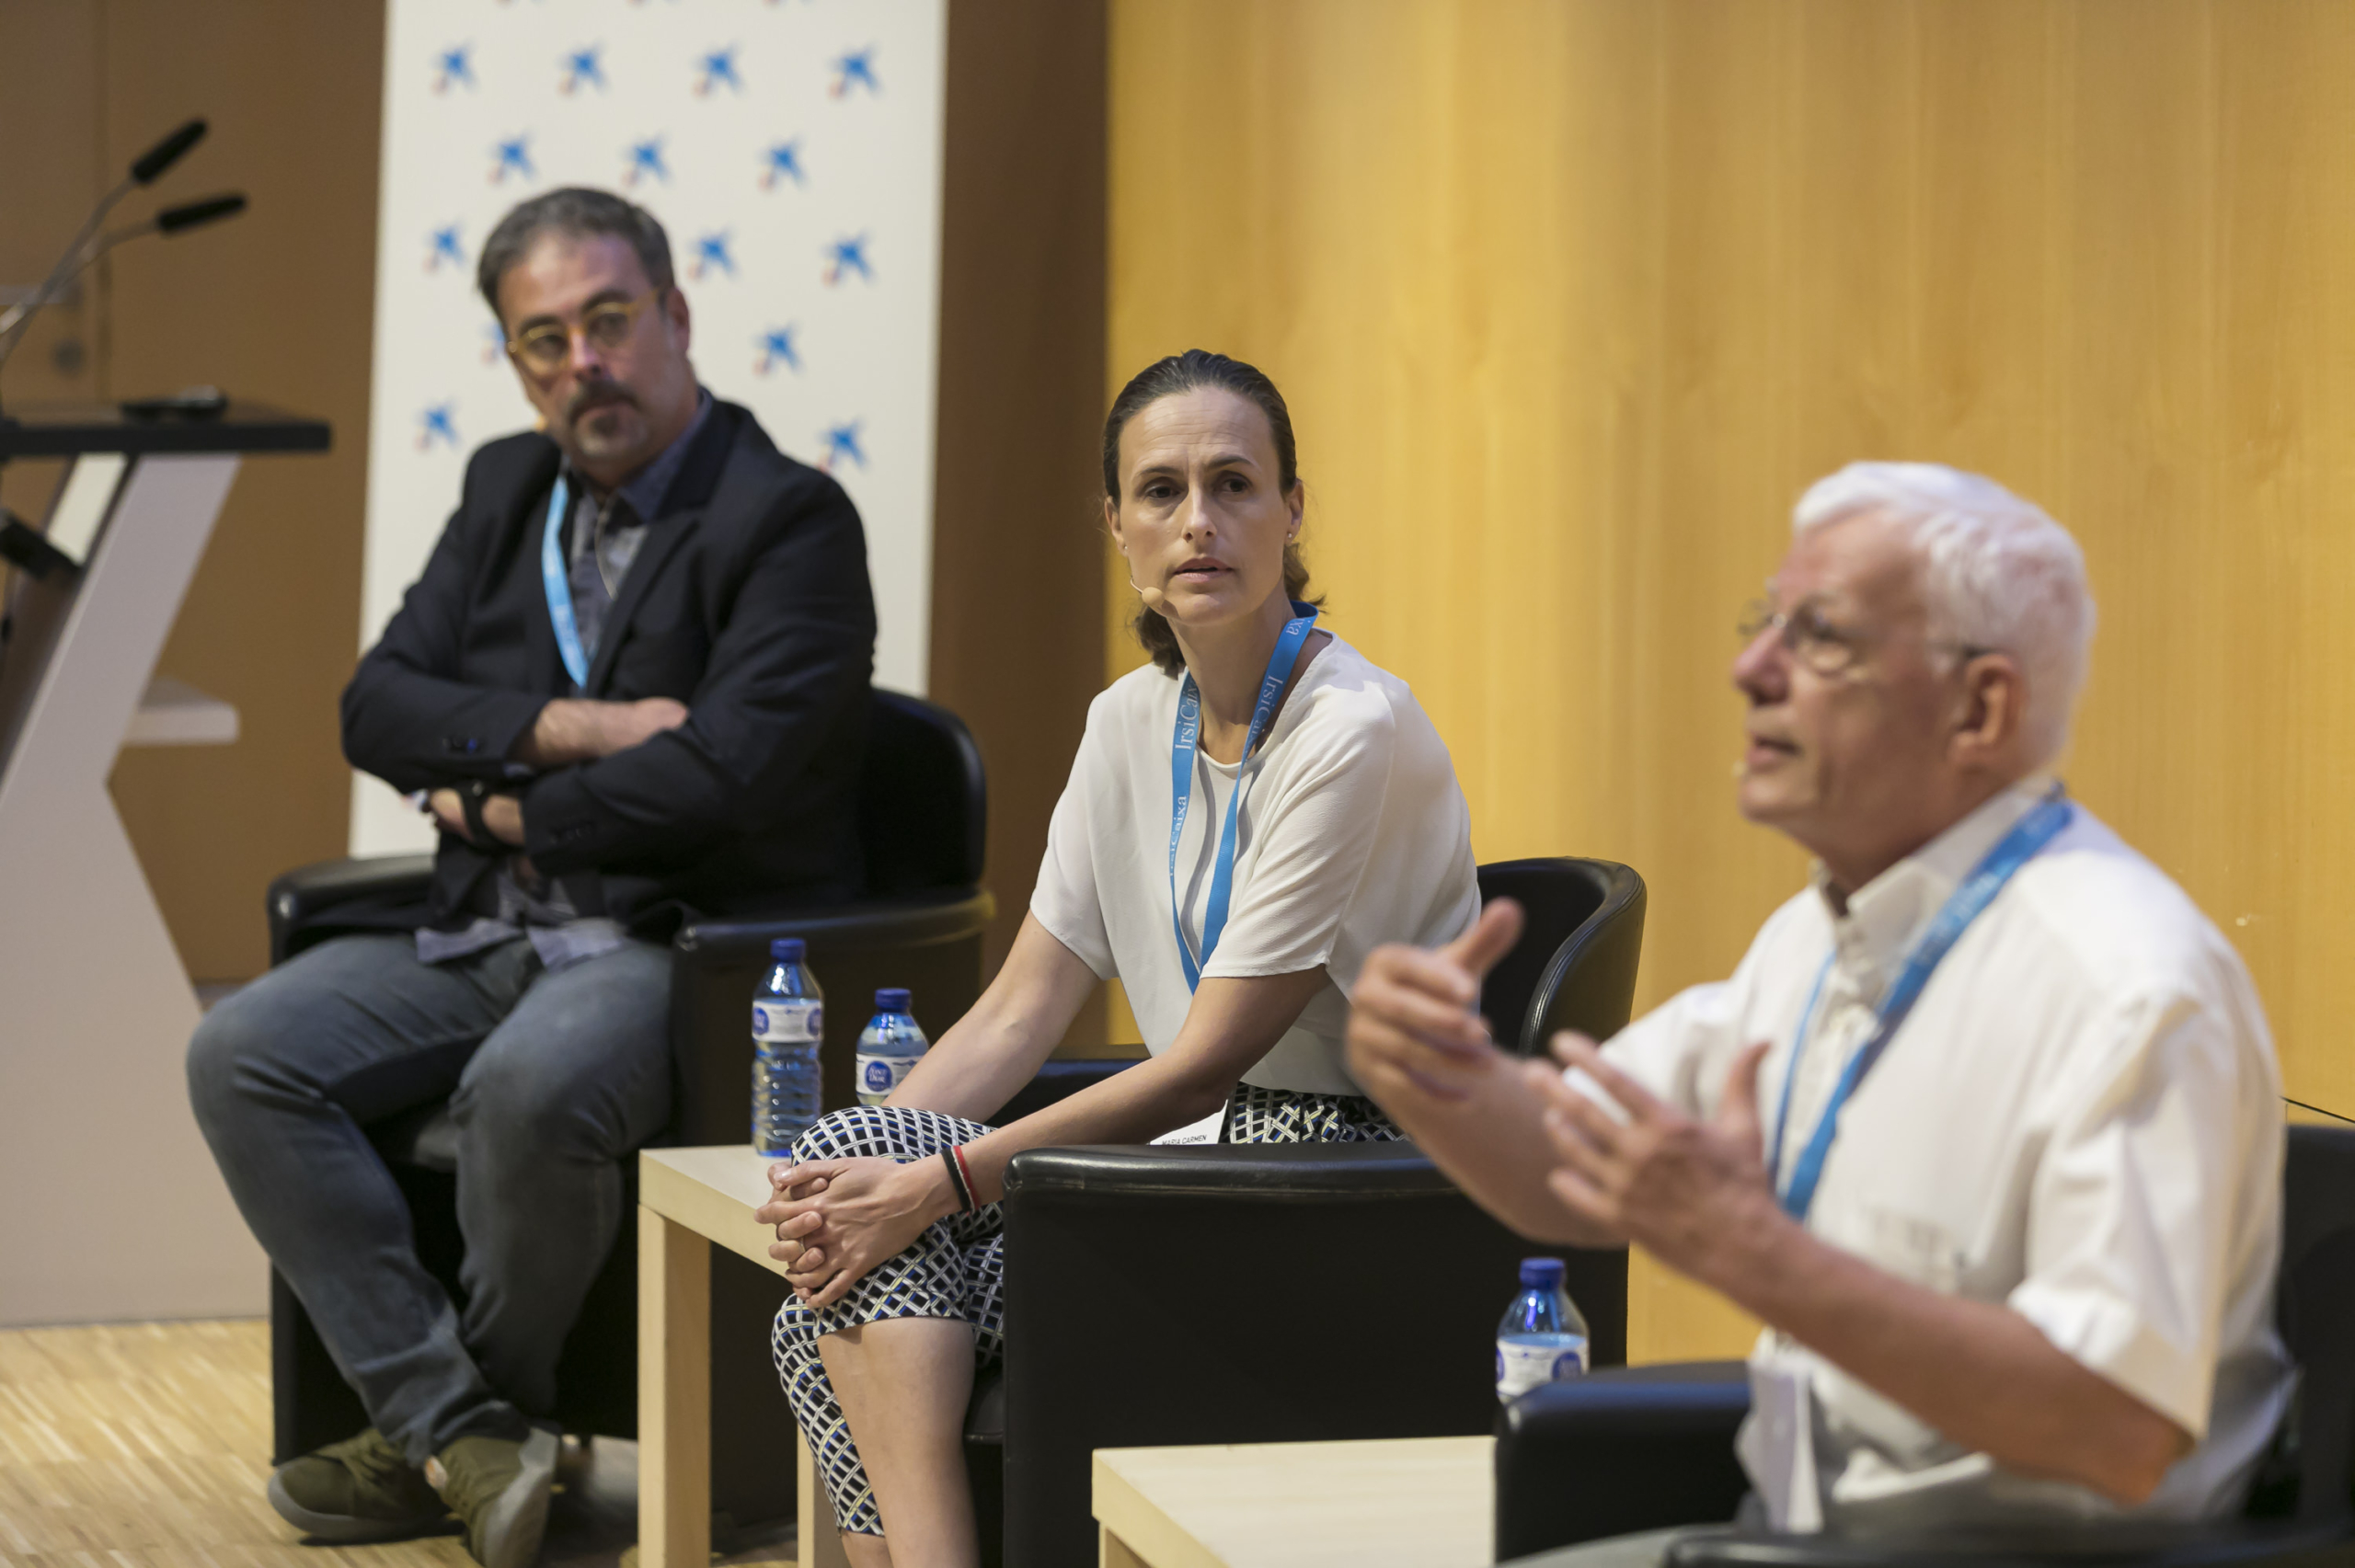 Barcelona Debates on the Human Microbiome 2022